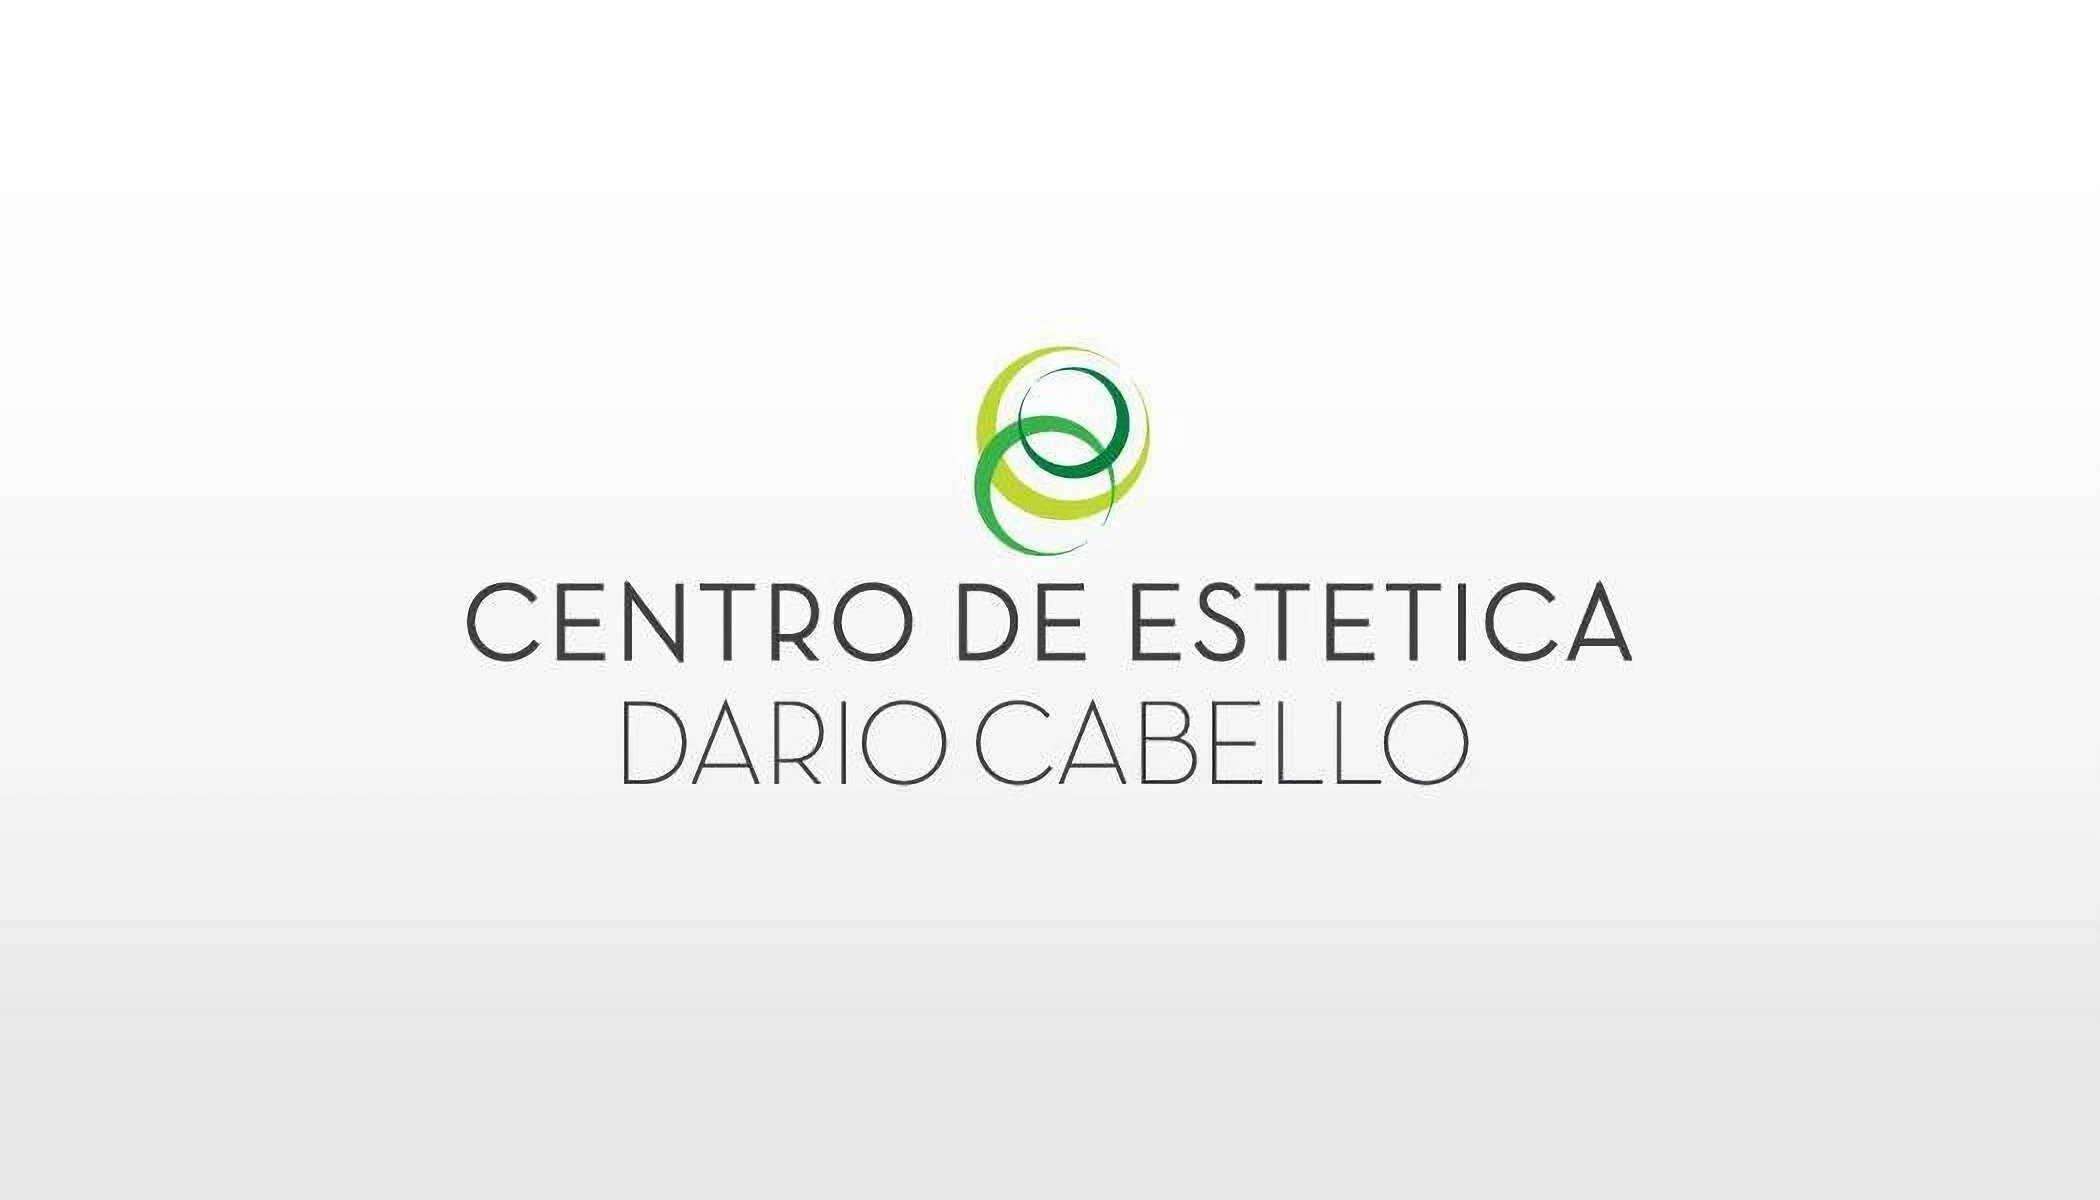 Dario Cabello y Centro de Estética-1024